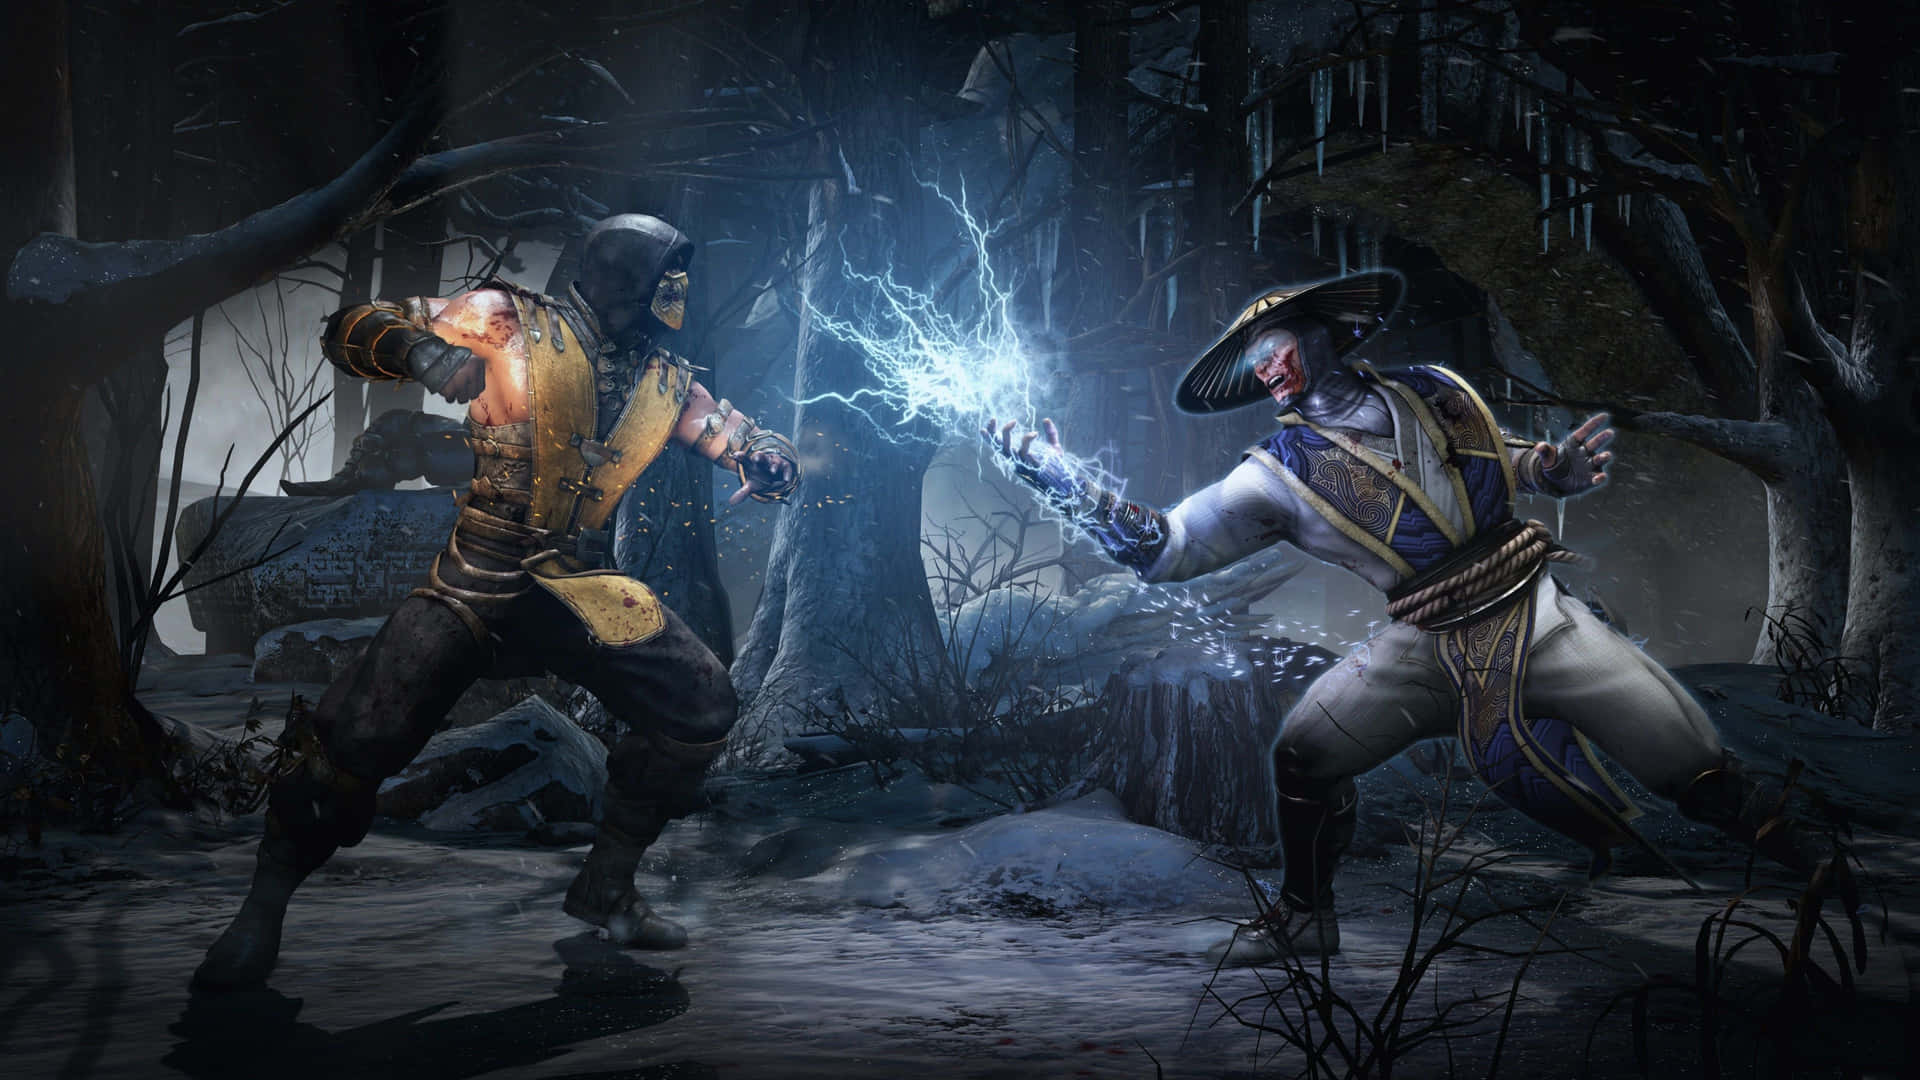 Electrifying Raiden Action in Mortal Kombat Wallpaper